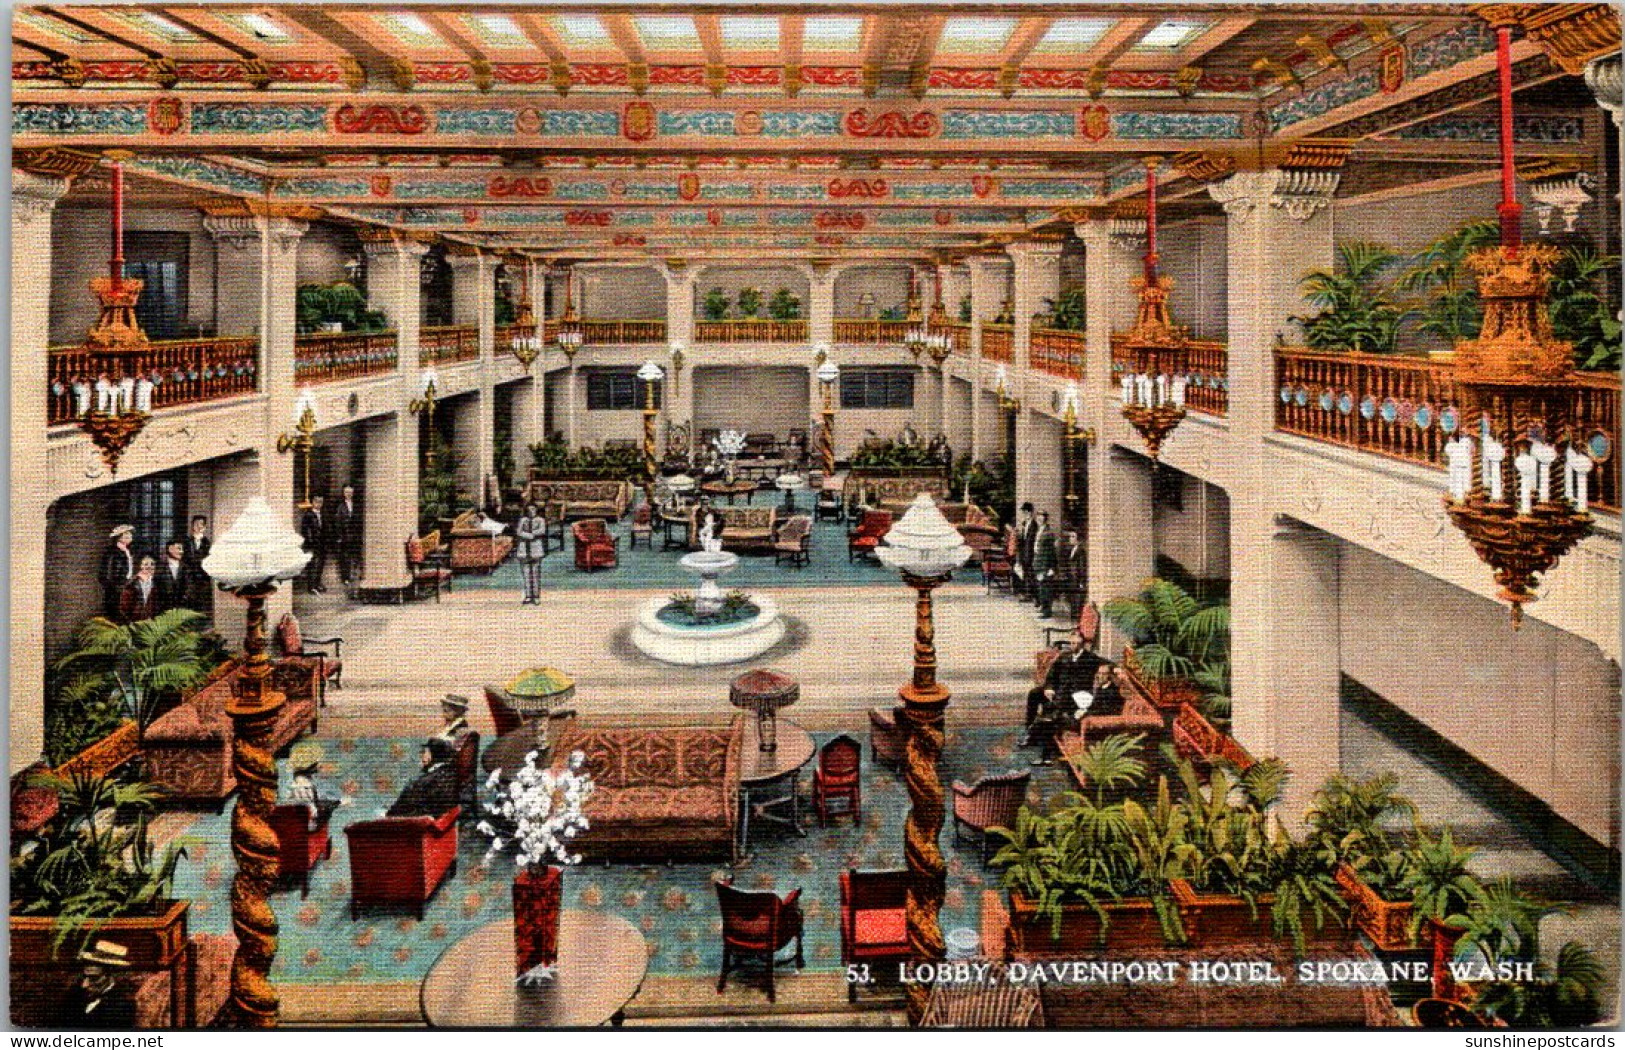 Washington Spokane Davenport Hotel The Lobby Curteich - Spokane